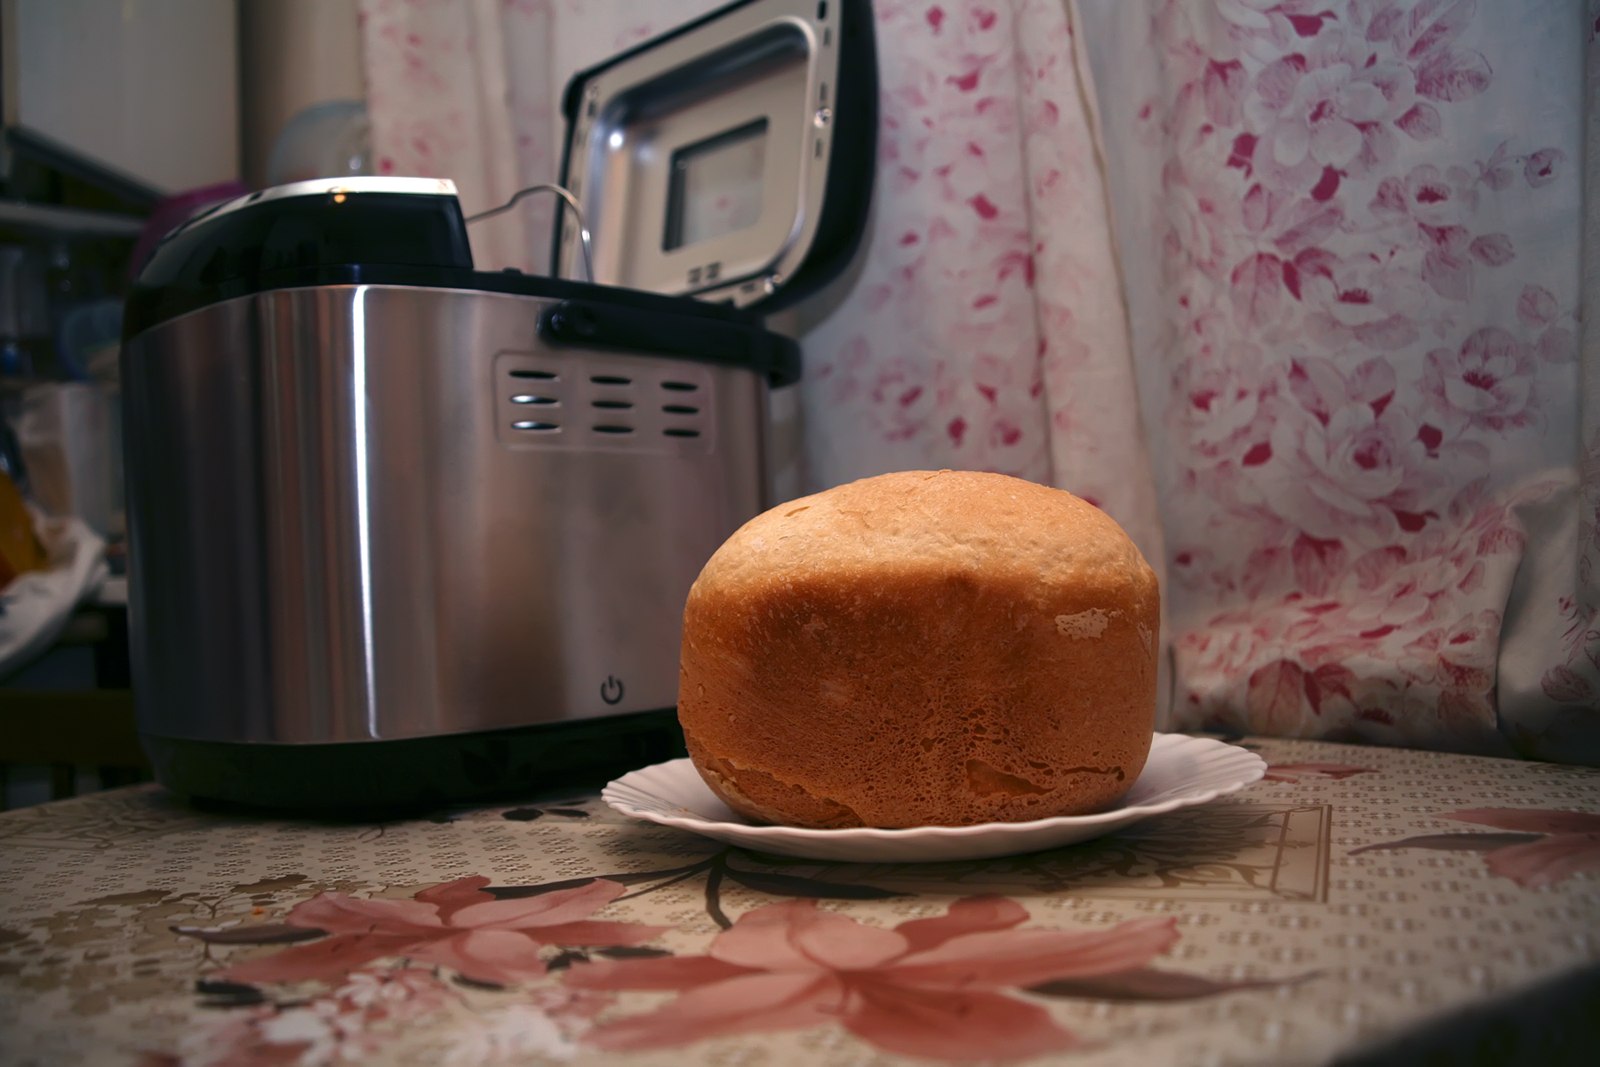 Приготовить в хлебопечке рецепты. Хлеб в хлебопечке. Хлеб из хлебопечки. Выпекание хлеба в хлебопечке. Домашний хлеб в хлебопечке.